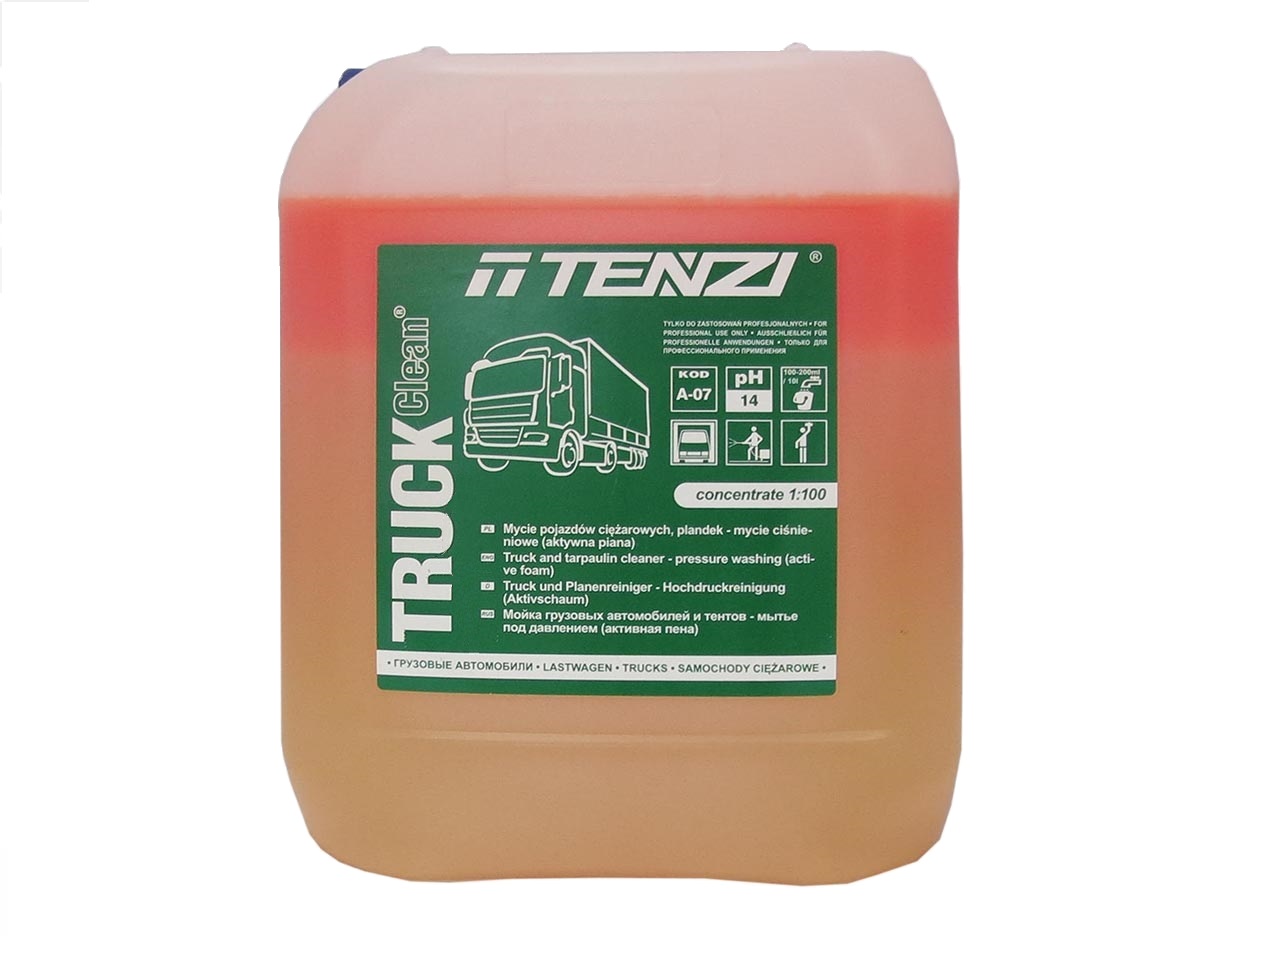 Uni clean 10 л Tenzi. Пена для грузовых автомобилей. Tenzi WC sani 10 л. Rubber off 10 л Tenzi.